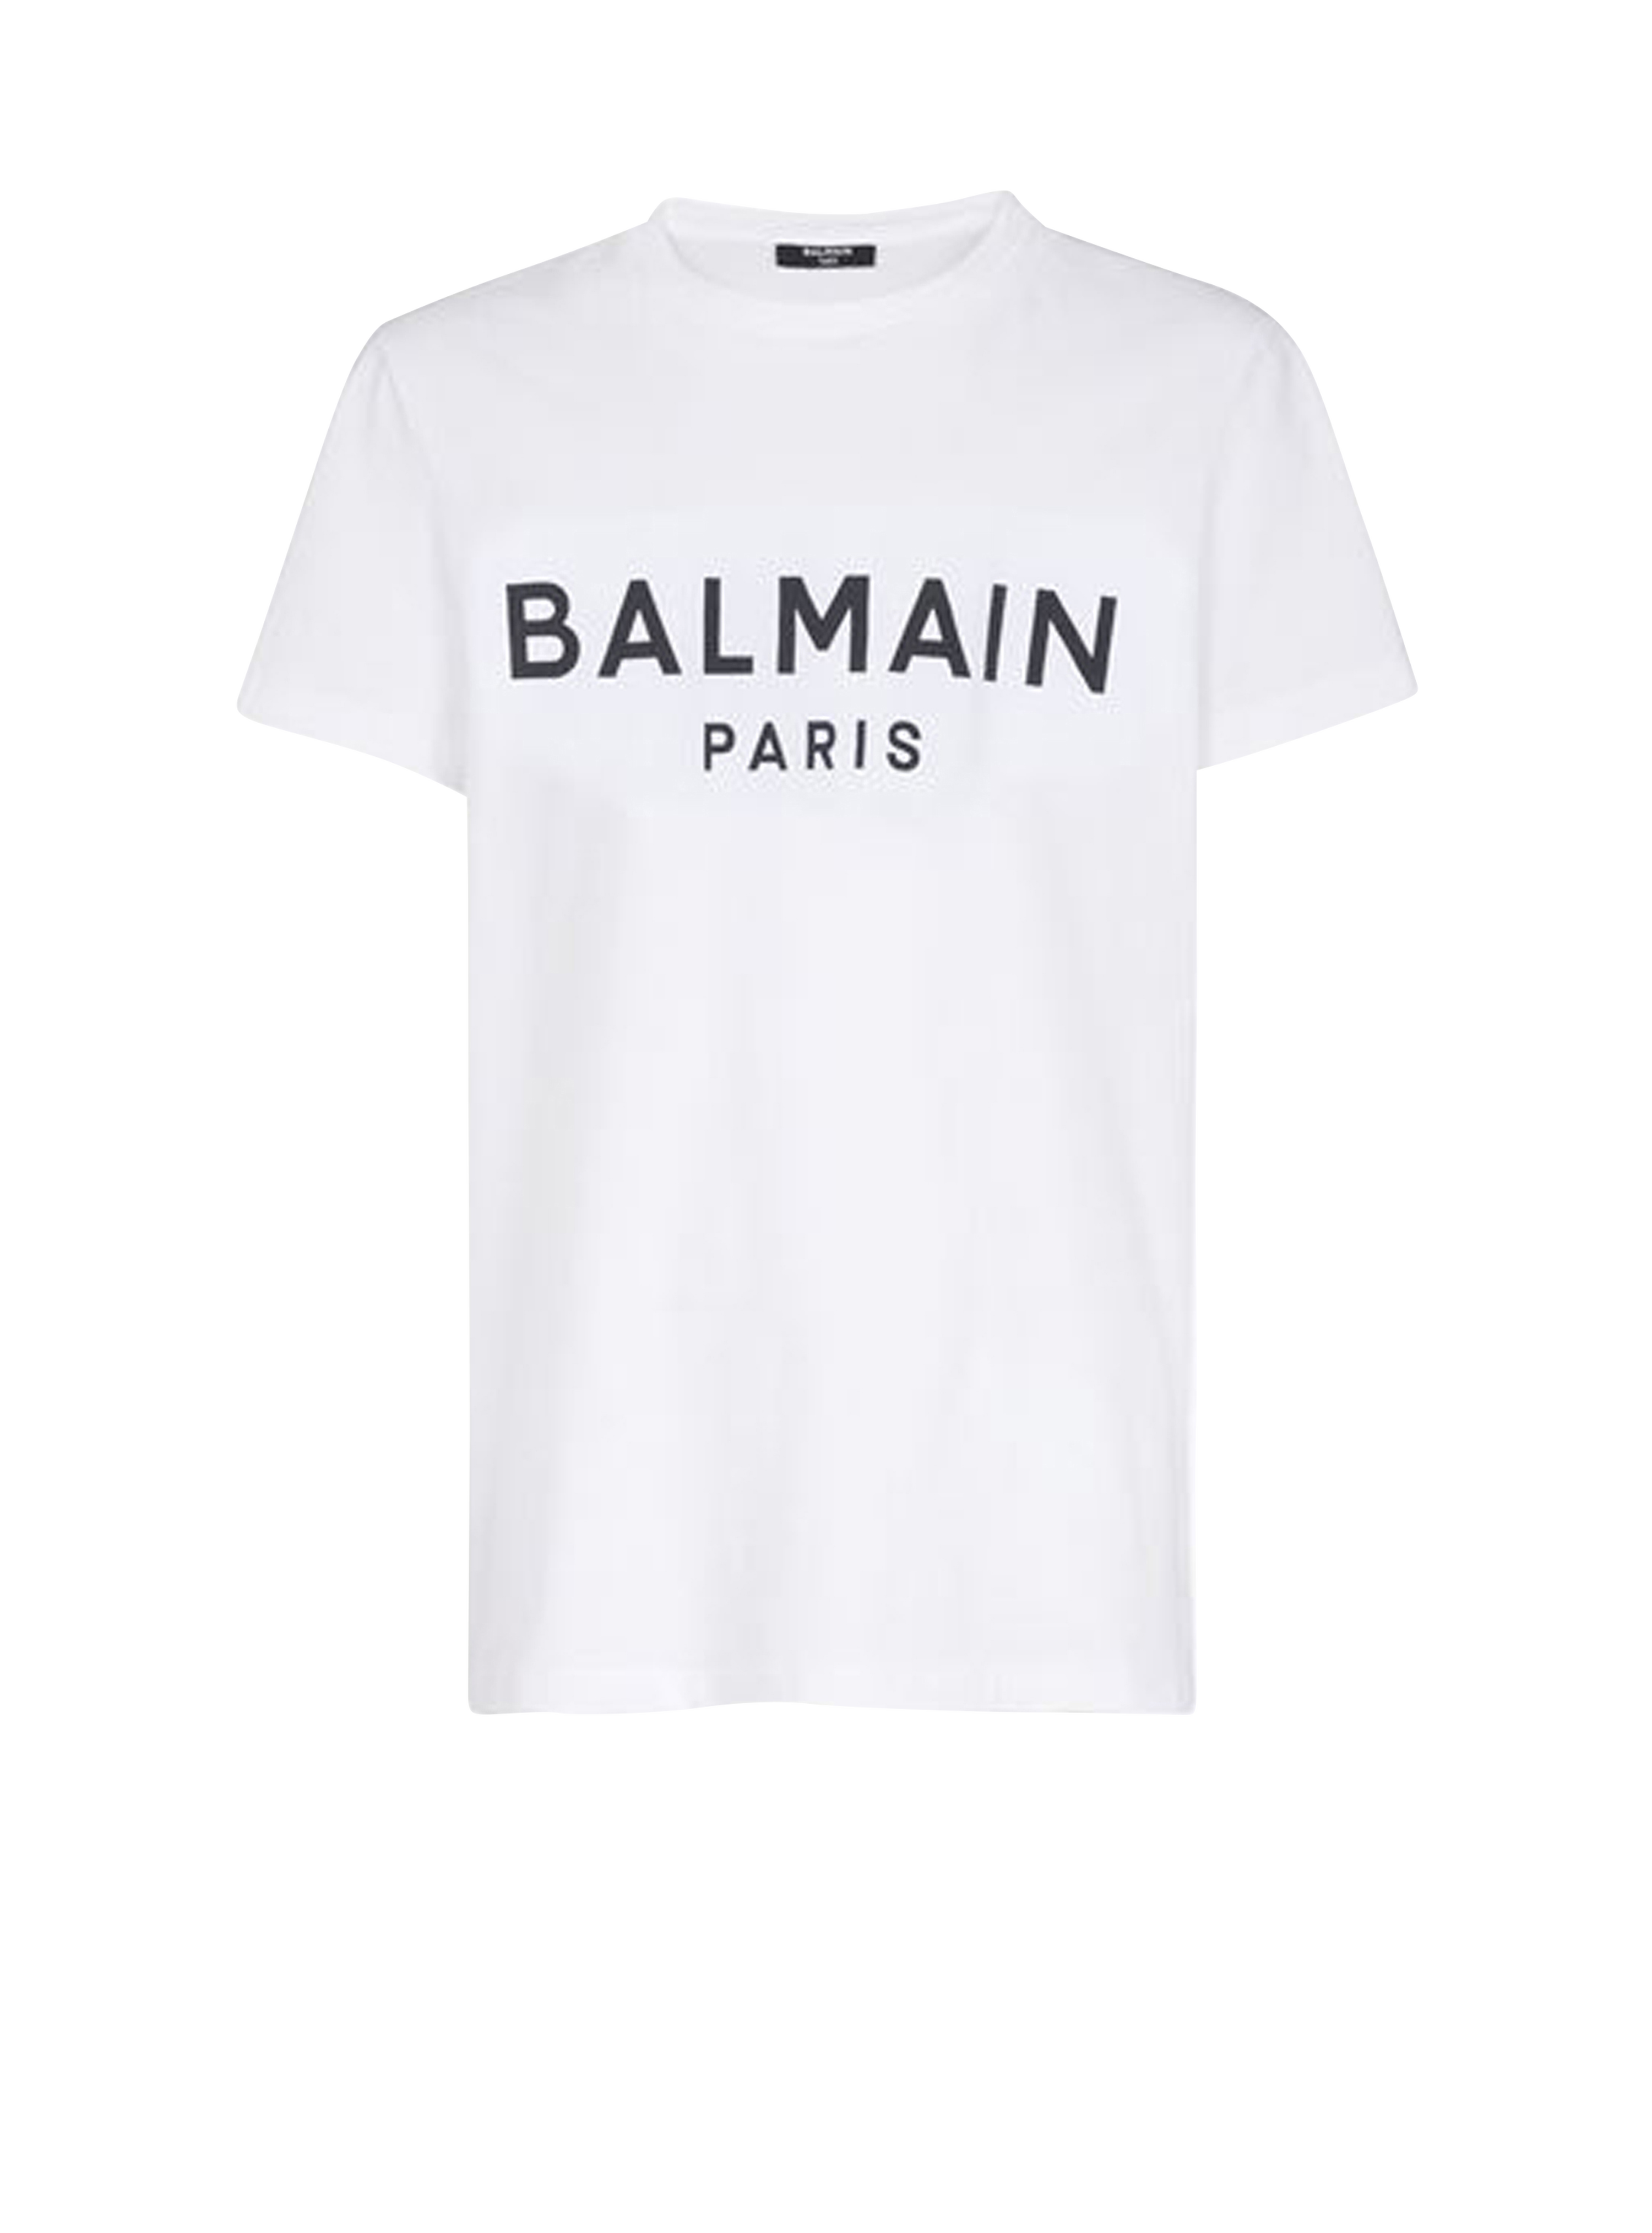 T-shirt en coton éco-design floqué logo Balmain, blanc